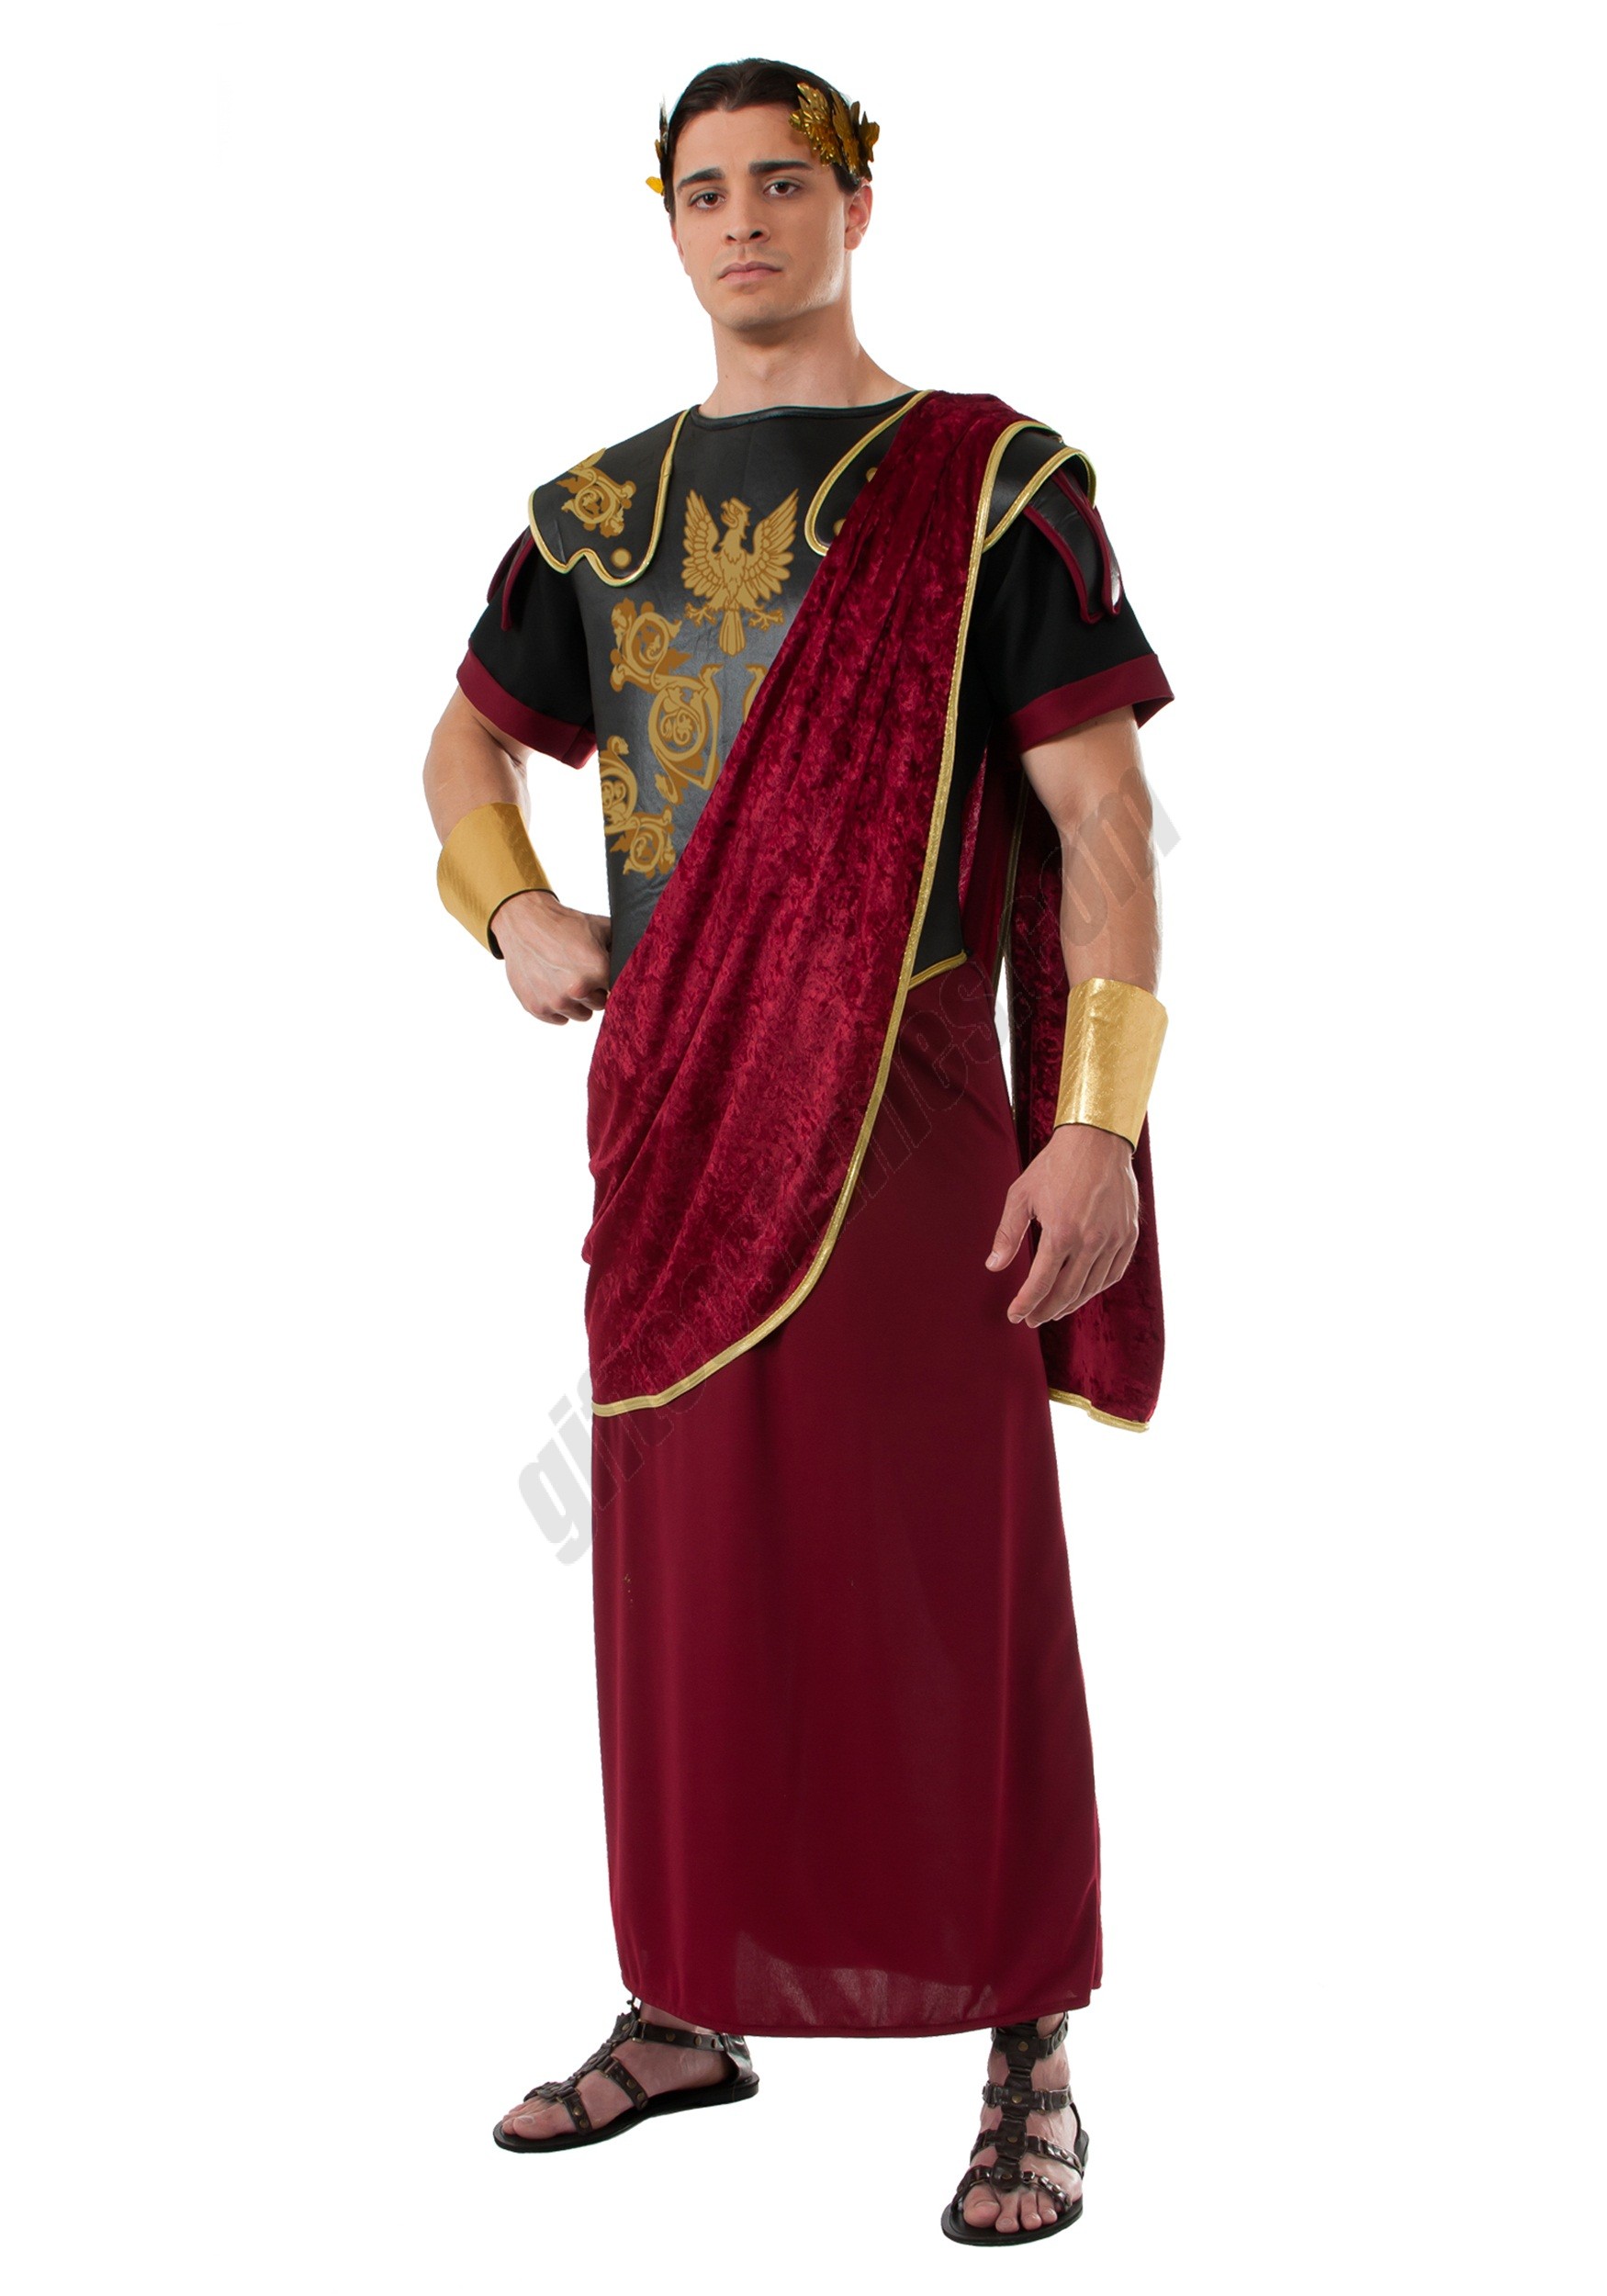 Julius Caesar Costume Promotions - Julius Caesar Costume Promotions